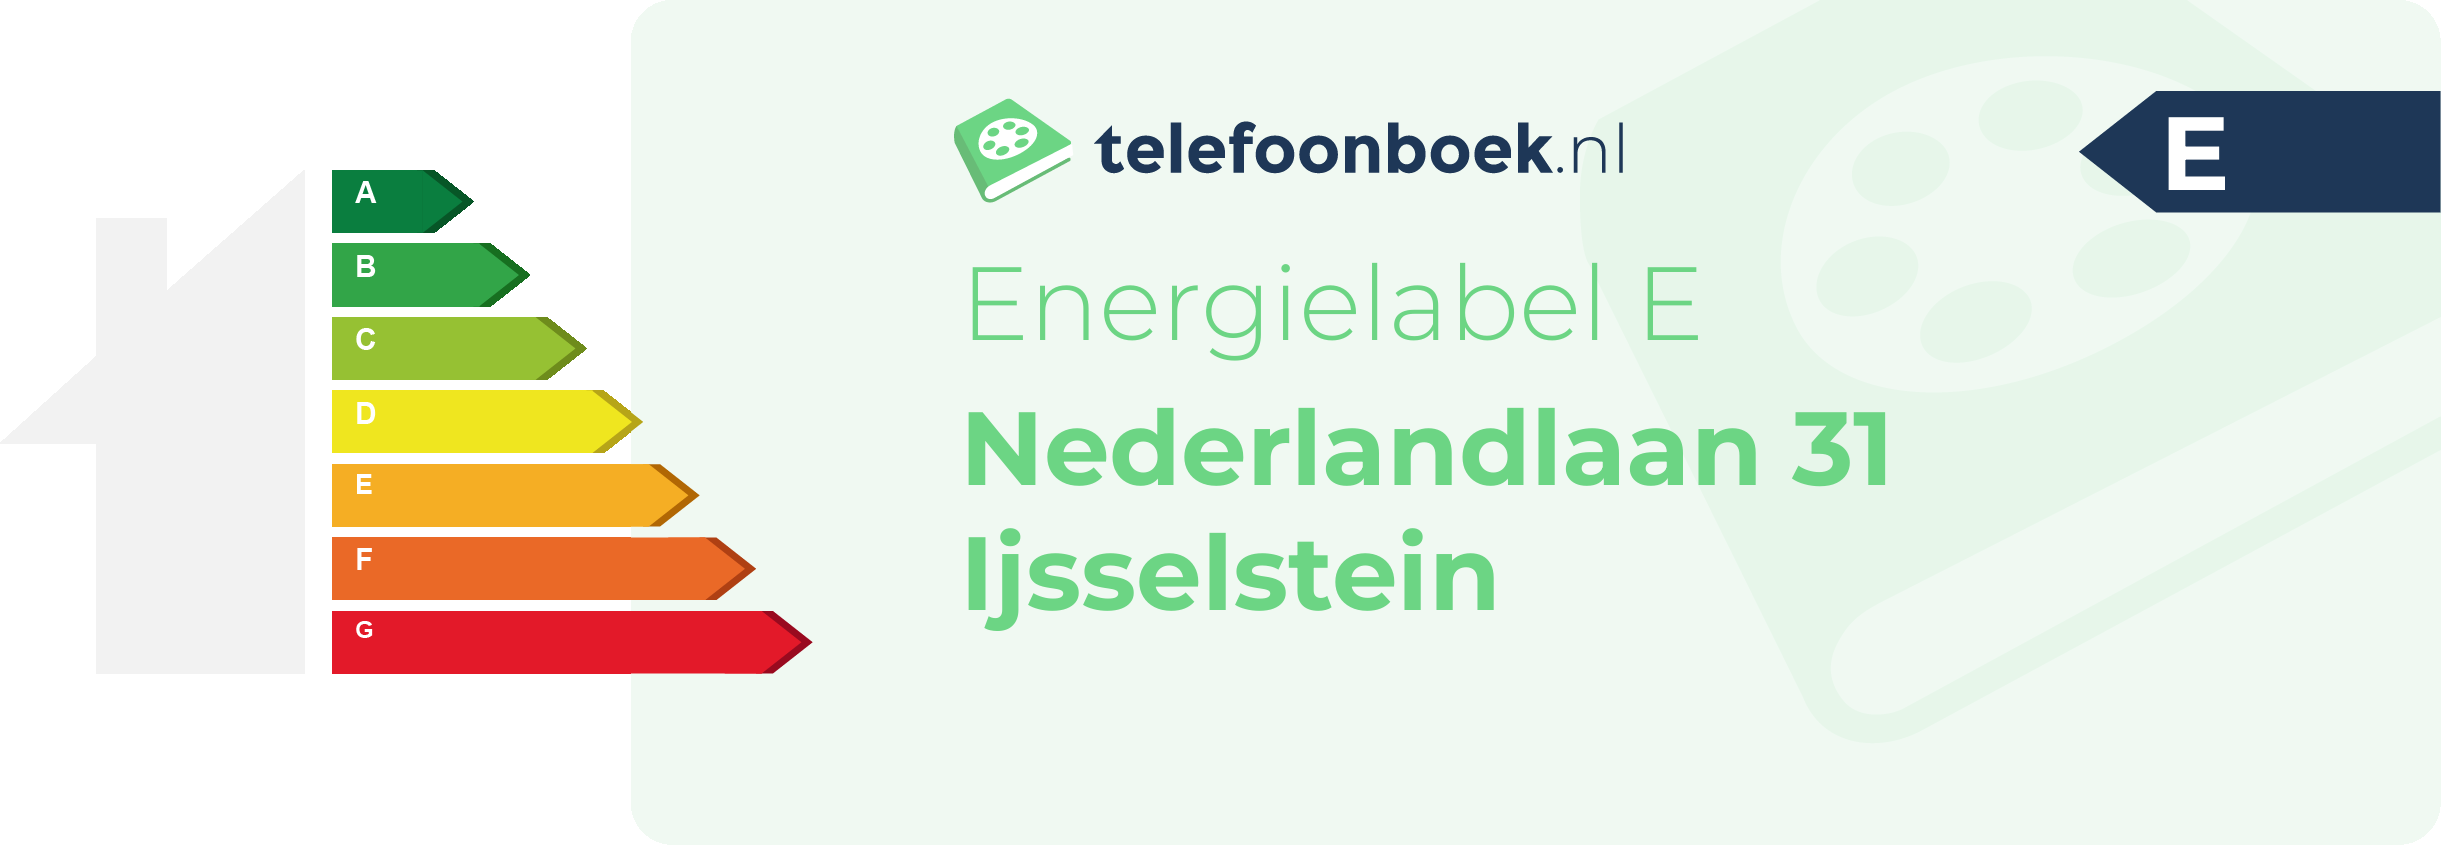 Energielabel Nederlandlaan 31 Ijsselstein